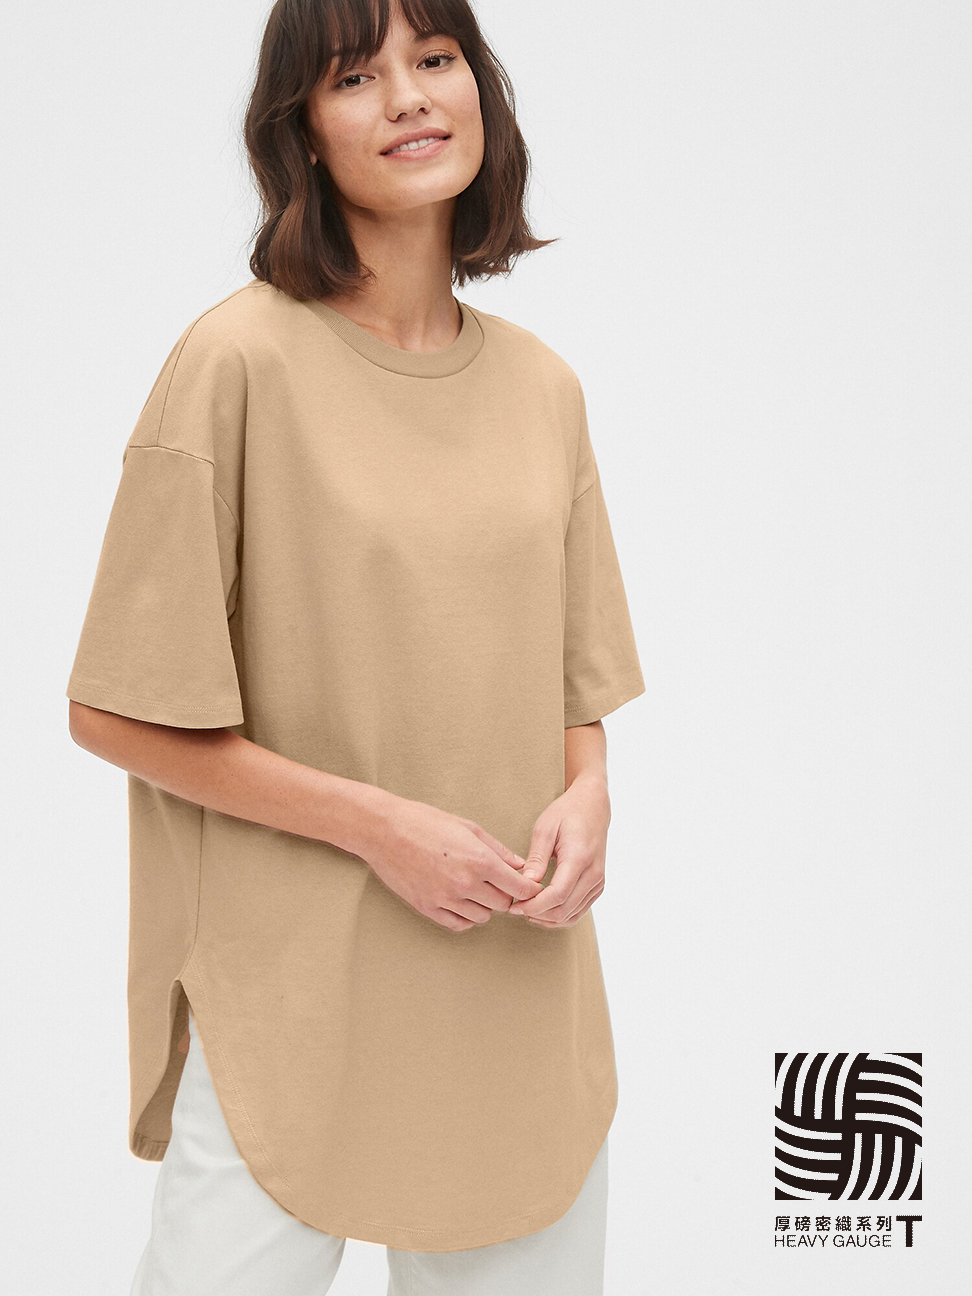 女裝|棉質舒適圓領短袖T恤-駱駝毛米黃